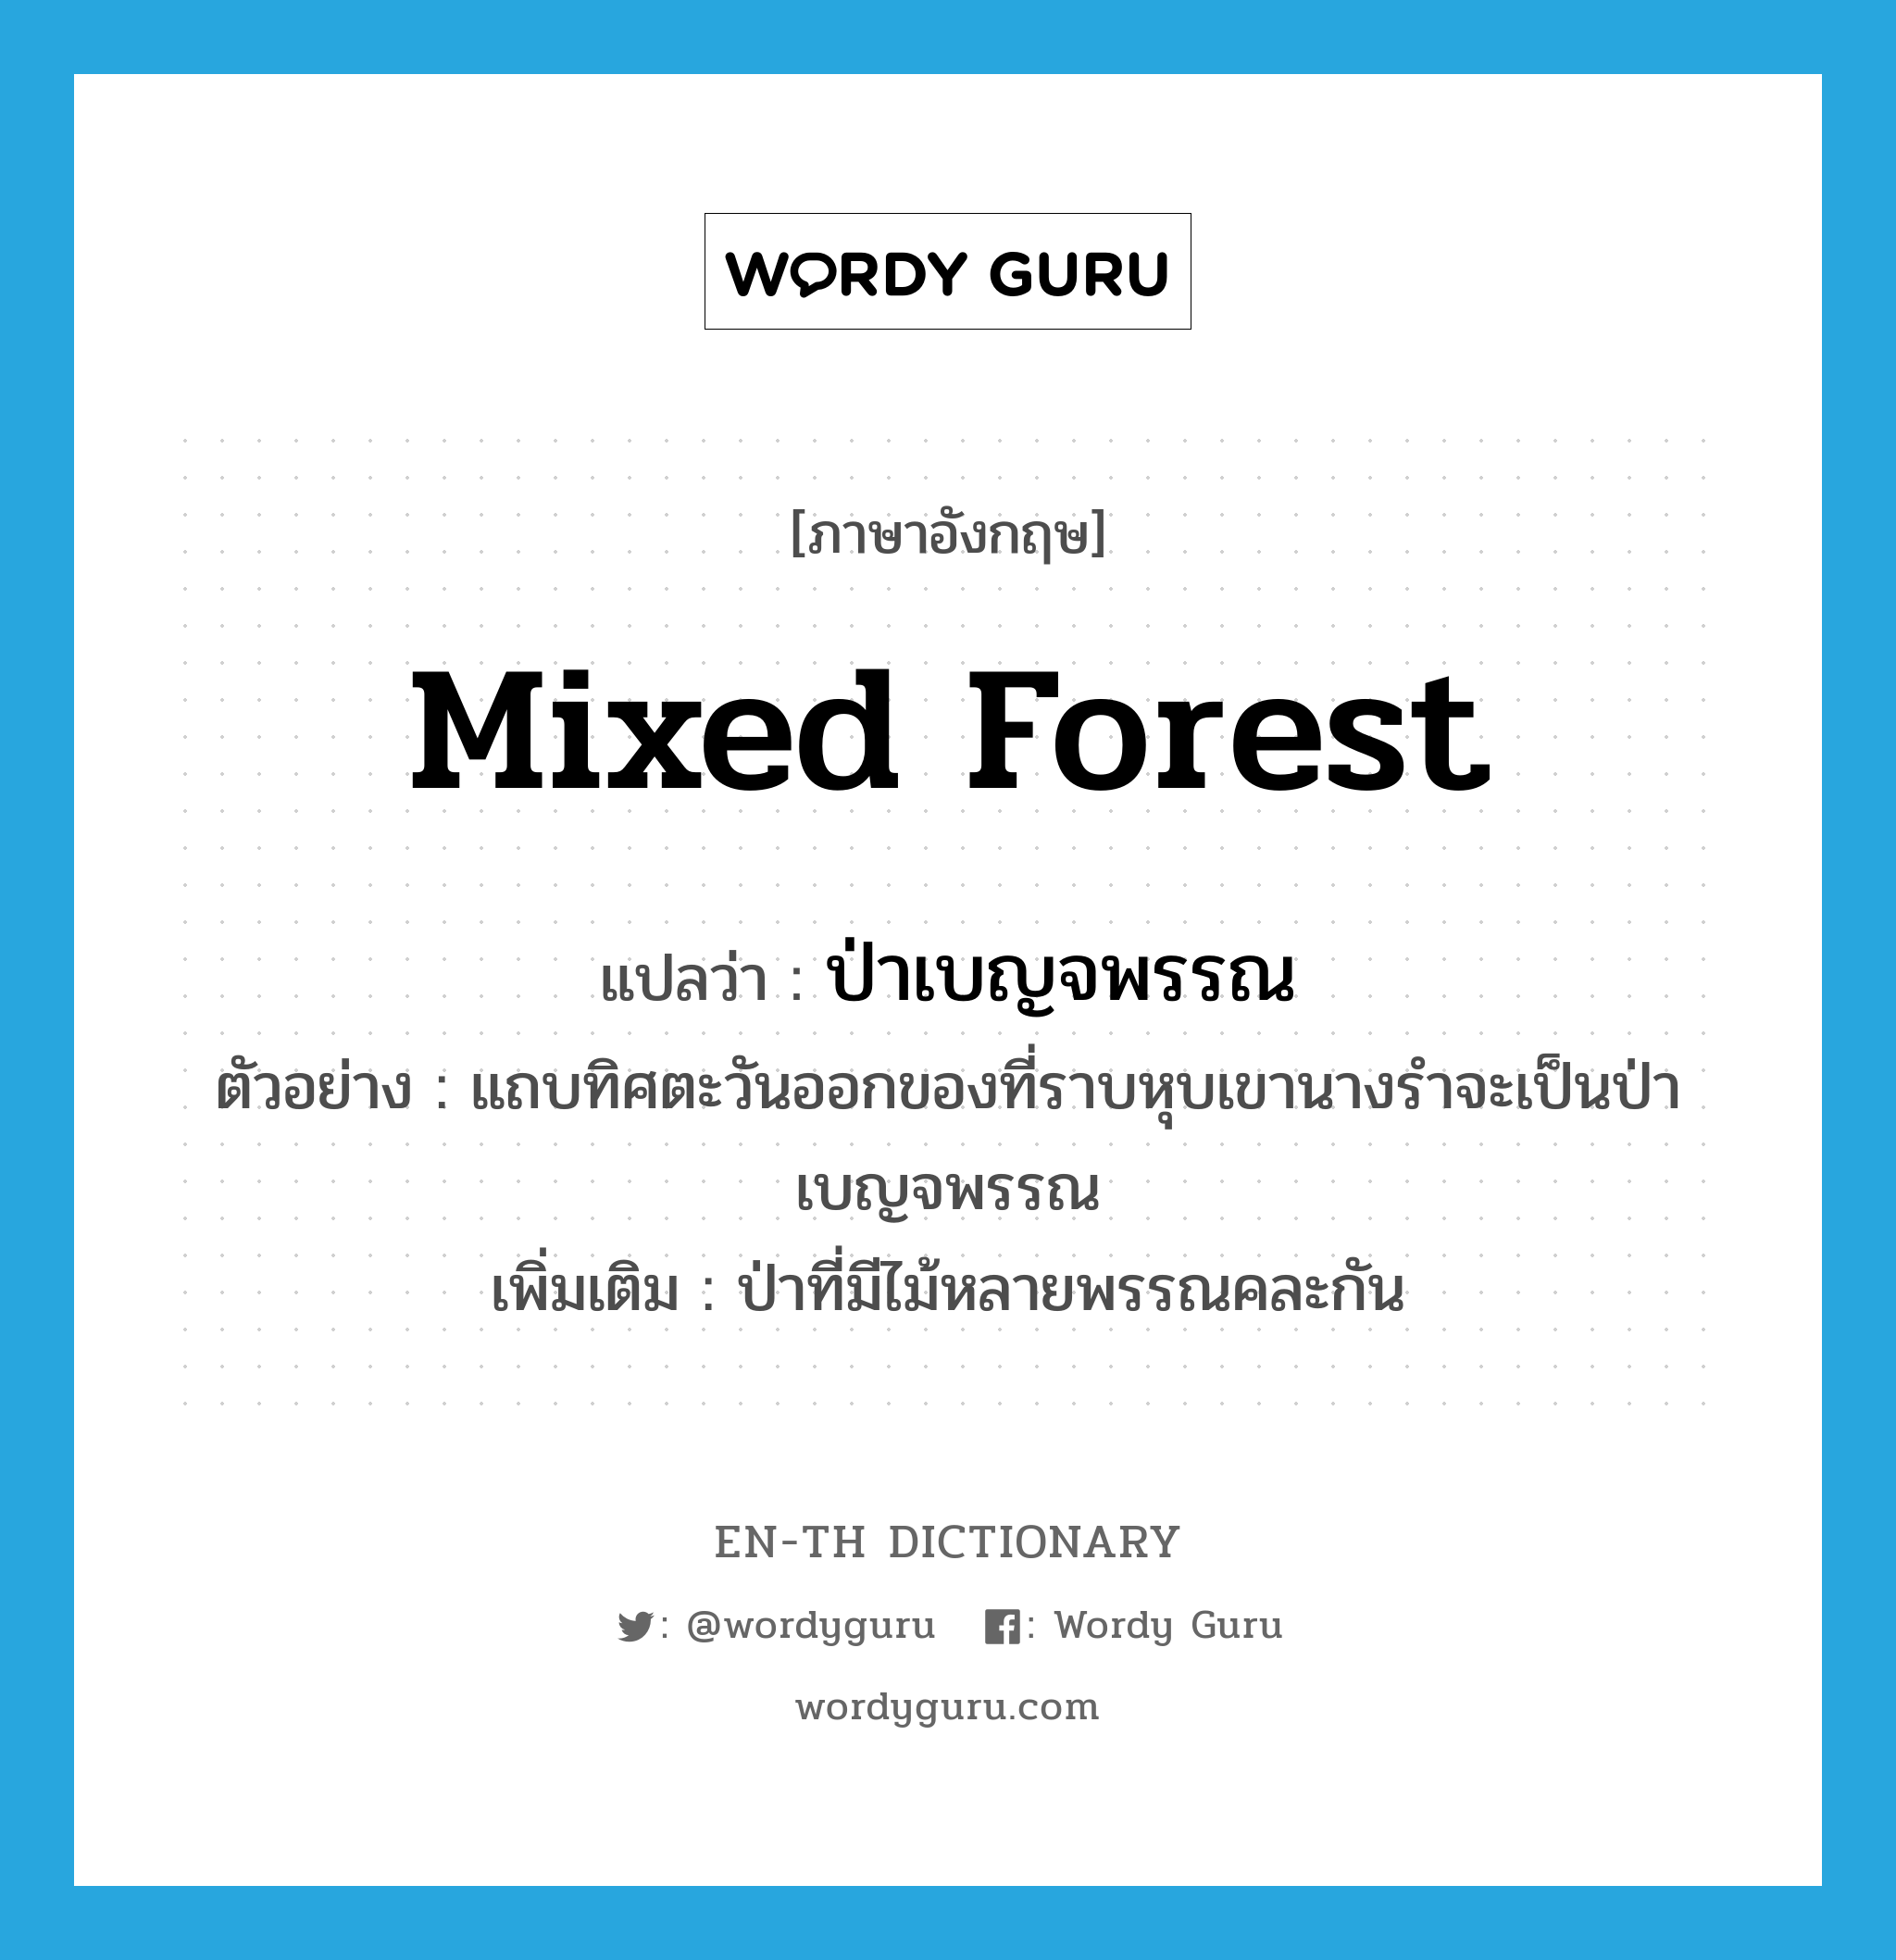 mixed forest แปลว่า?, คำศัพท์ภาษาอังกฤษ mixed forest แปลว่า ป่าเบญจพรรณ ประเภท N ตัวอย่าง แถบทิศตะวันออกของที่ราบหุบเขานางรำจะเป็นป่าเบญจพรรณ เพิ่มเติม ป่าที่มีไม้หลายพรรณคละกัน หมวด N